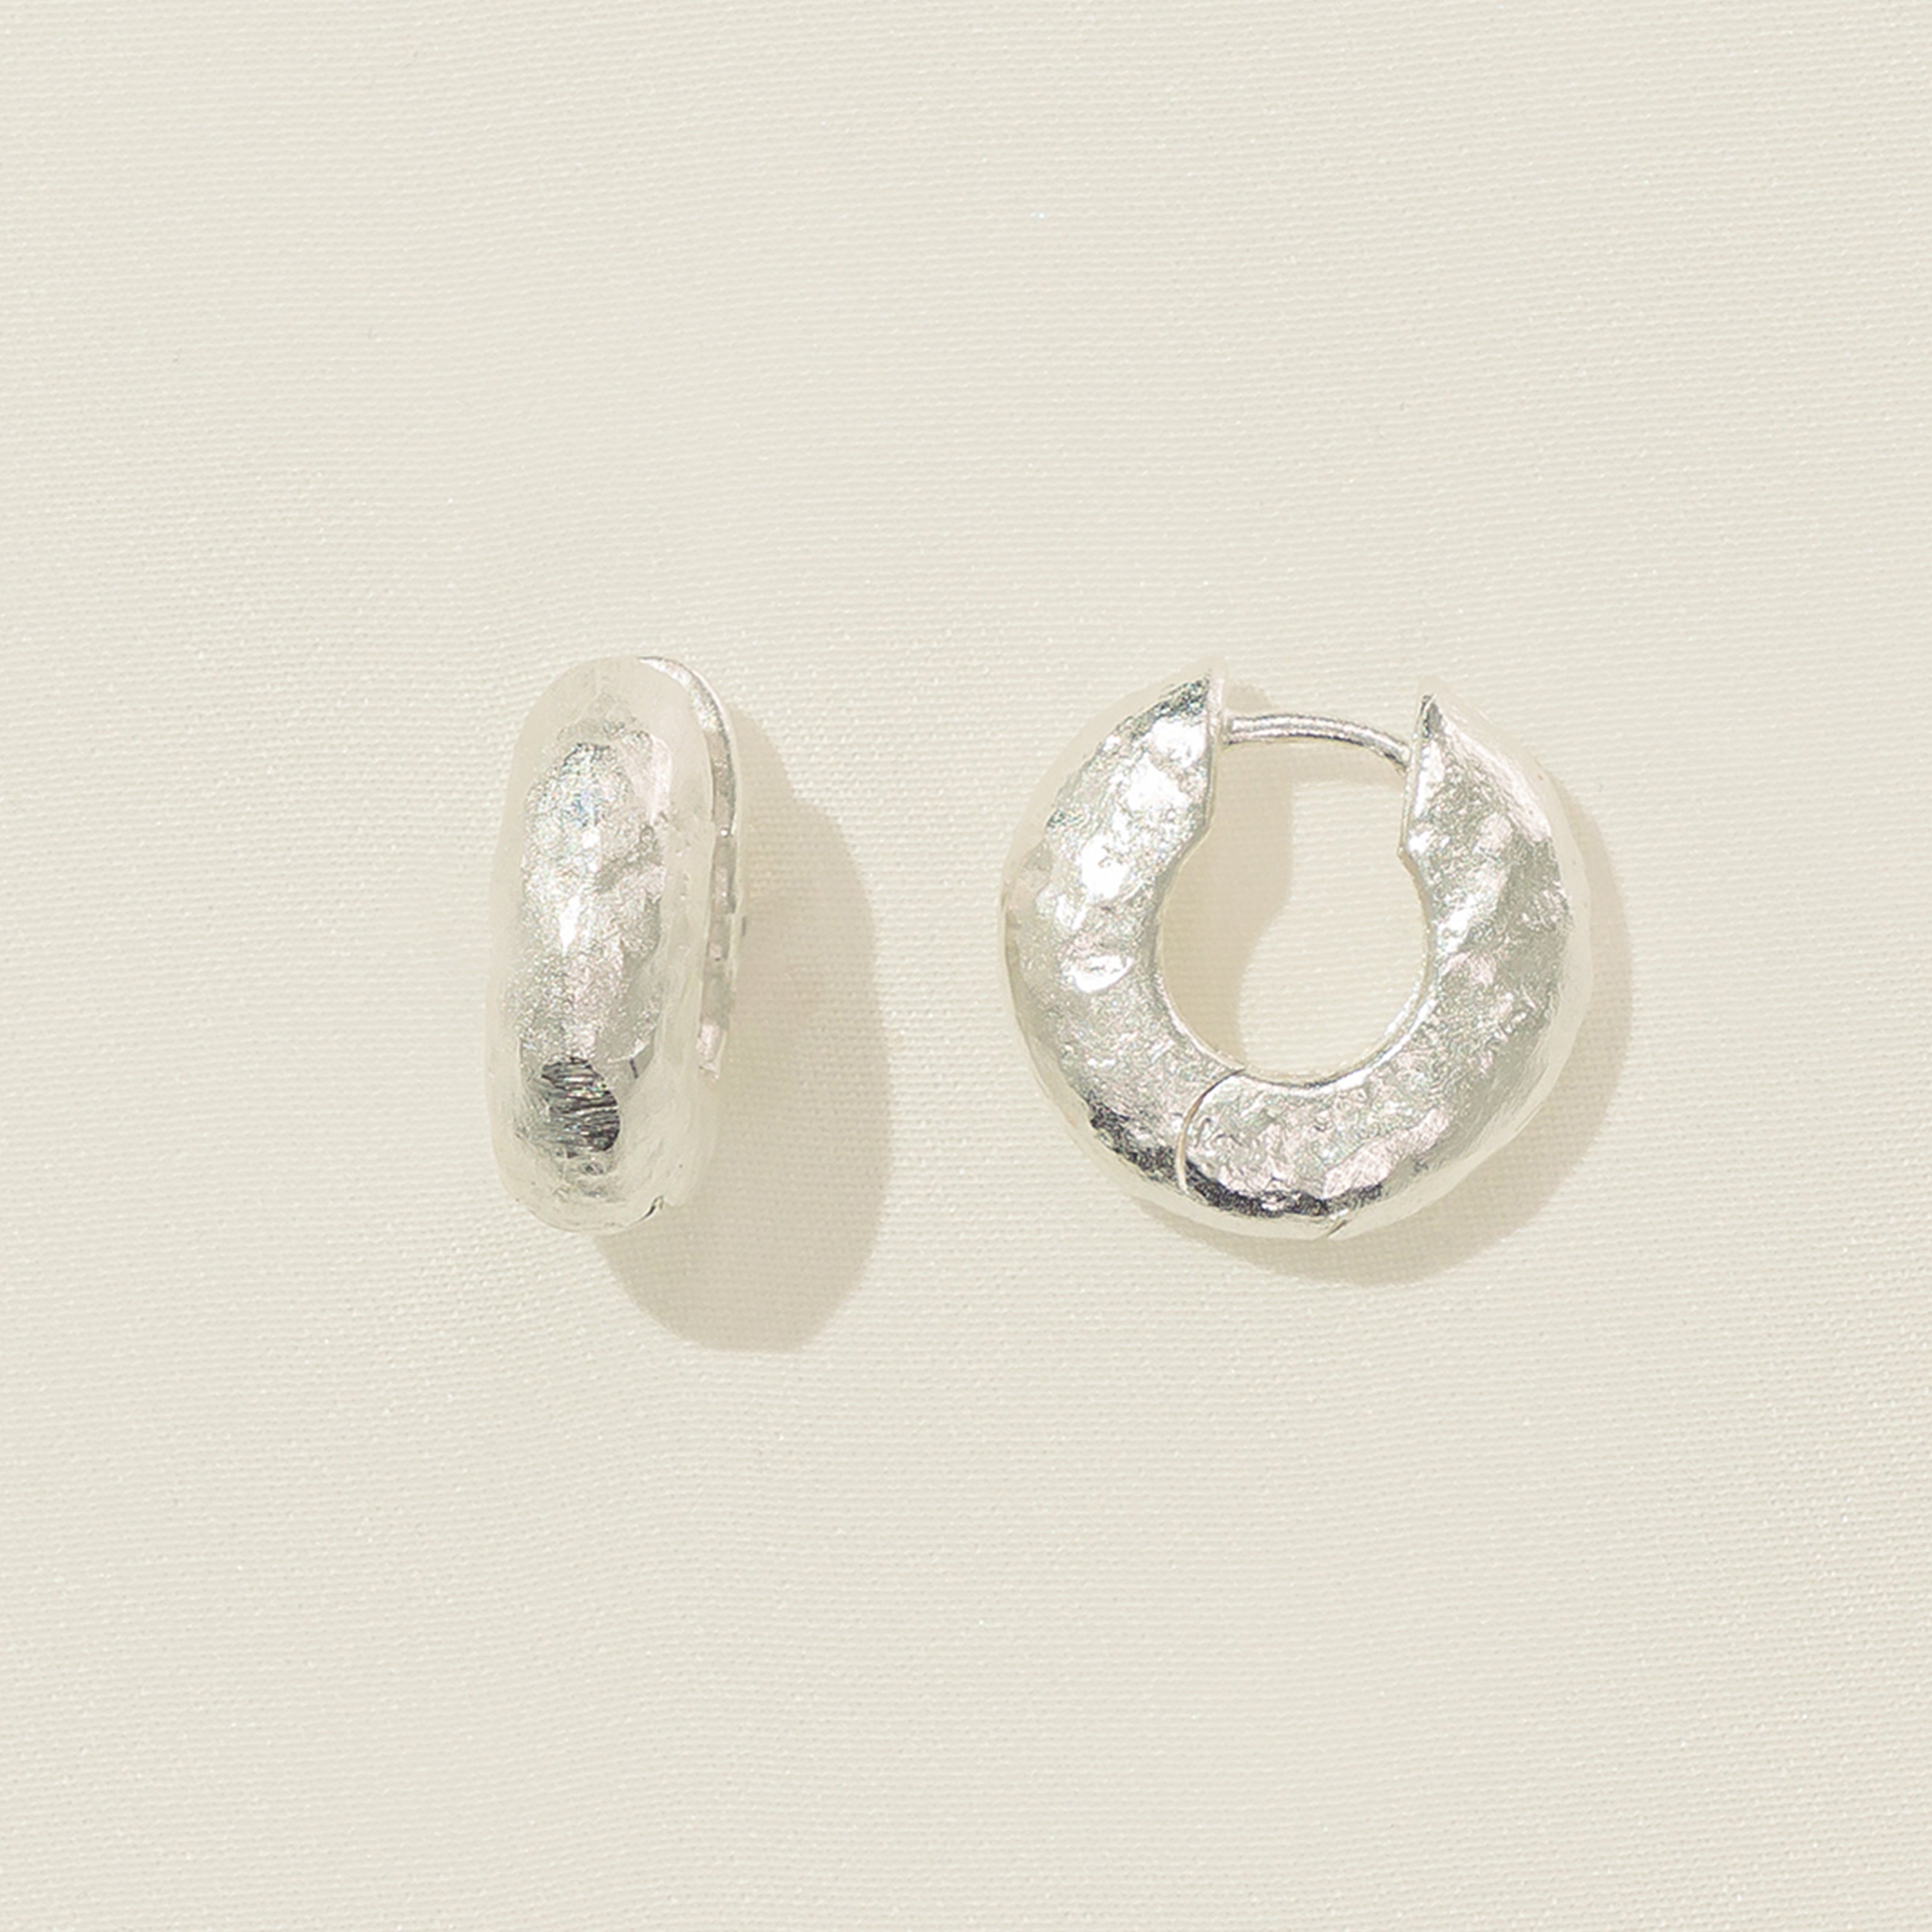 Anilla Silver Earrings